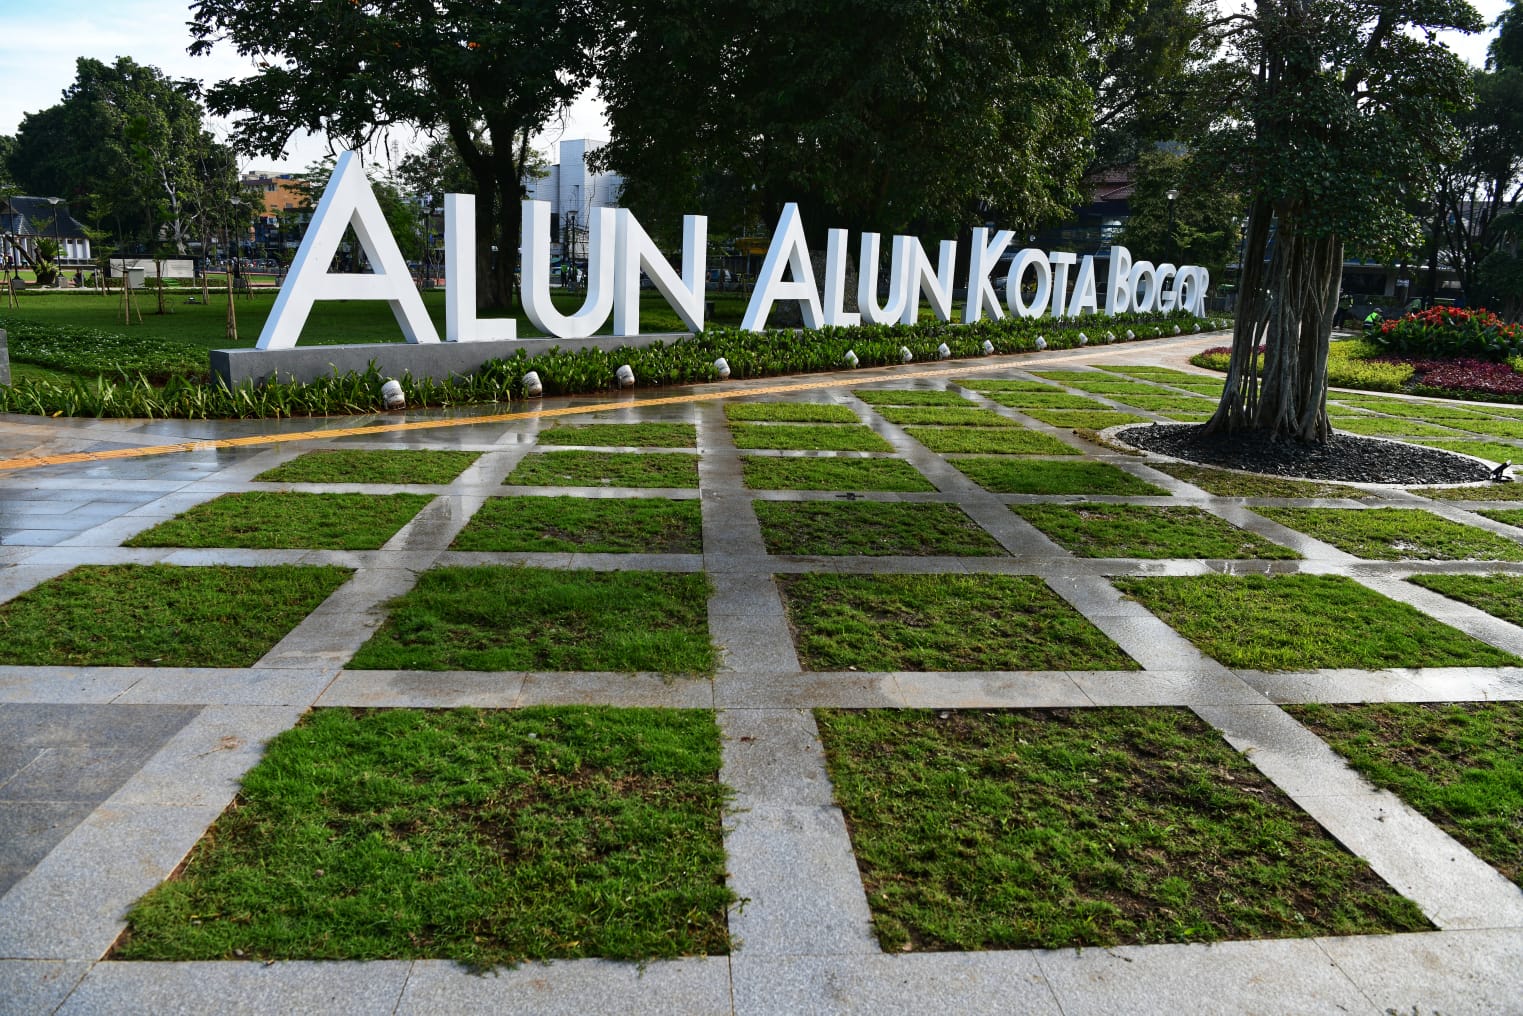 Alun-alun Kota Bogor Diresmikan Bertepatan dengan Ulang Tahun Bima Arya